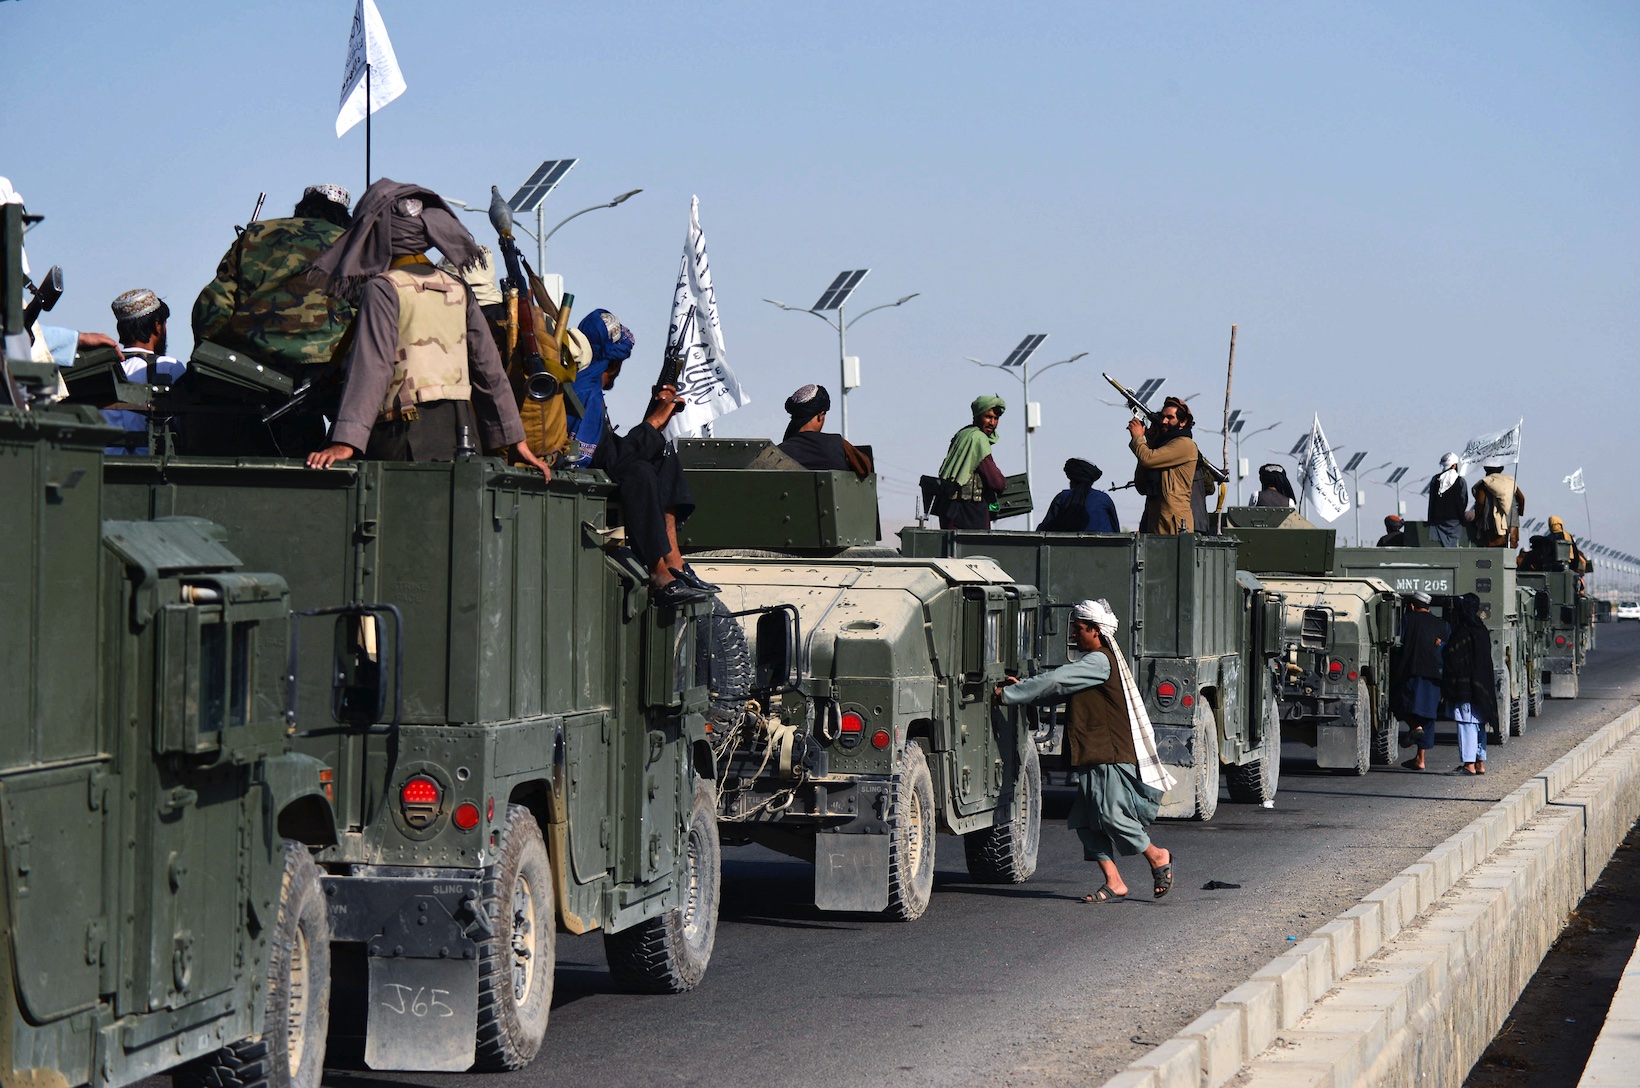 Des combattants talibans se préparent à défiler le long d’une route pour fêter le retrait des troupes américaines d’Afghanistan, à Kandahar, le 1er septembre 2021 (AFP/Javed Tanveer)